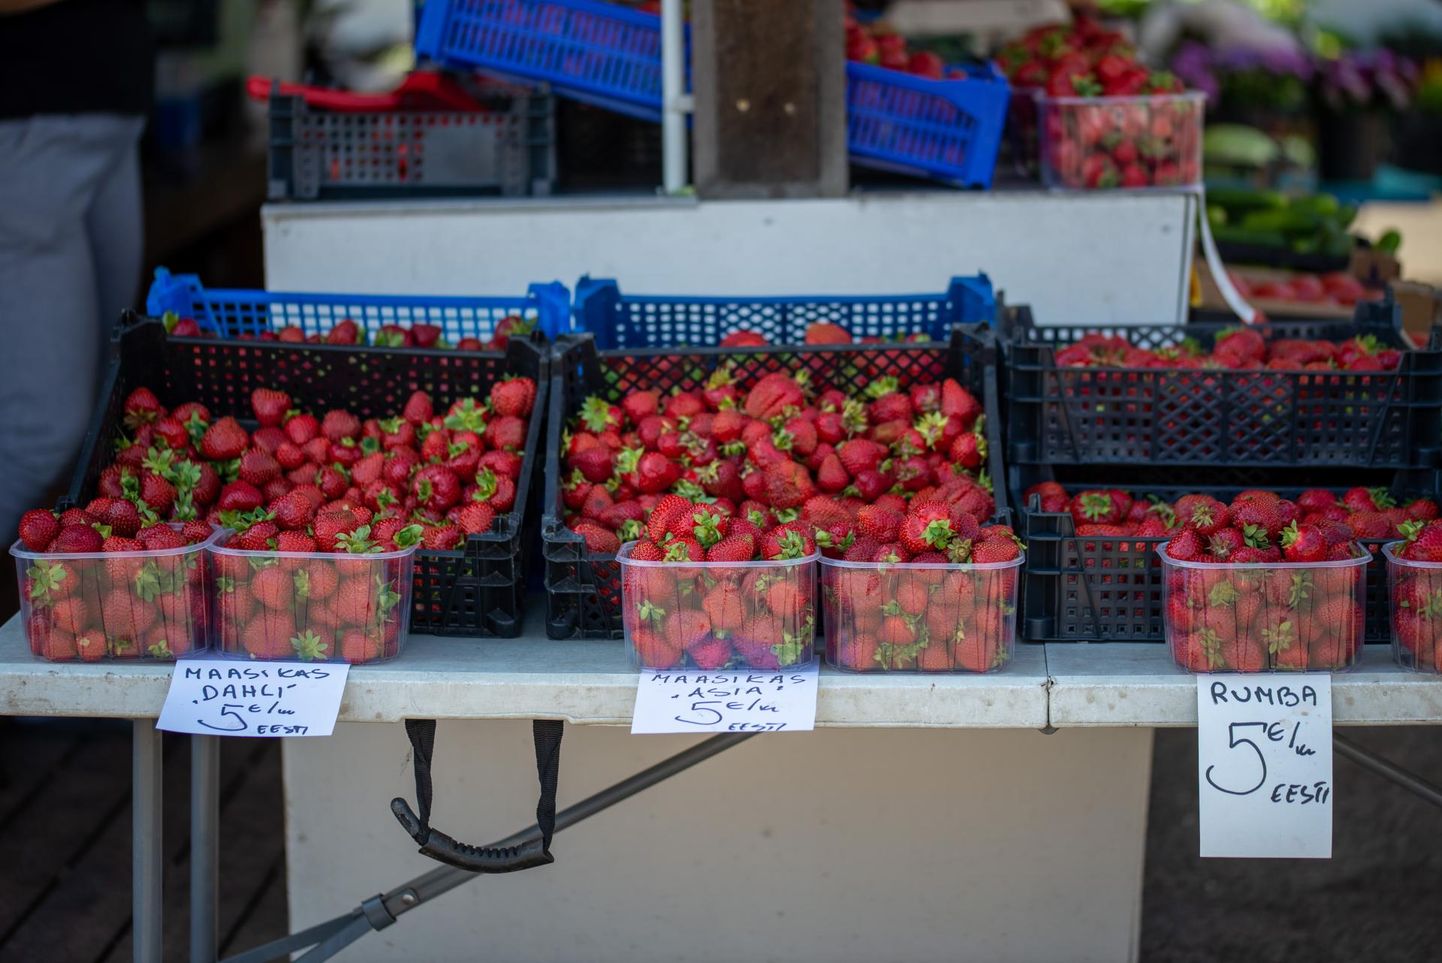 Nädala alguses oli valitsev maasikate kilohind turul 5 eurot.